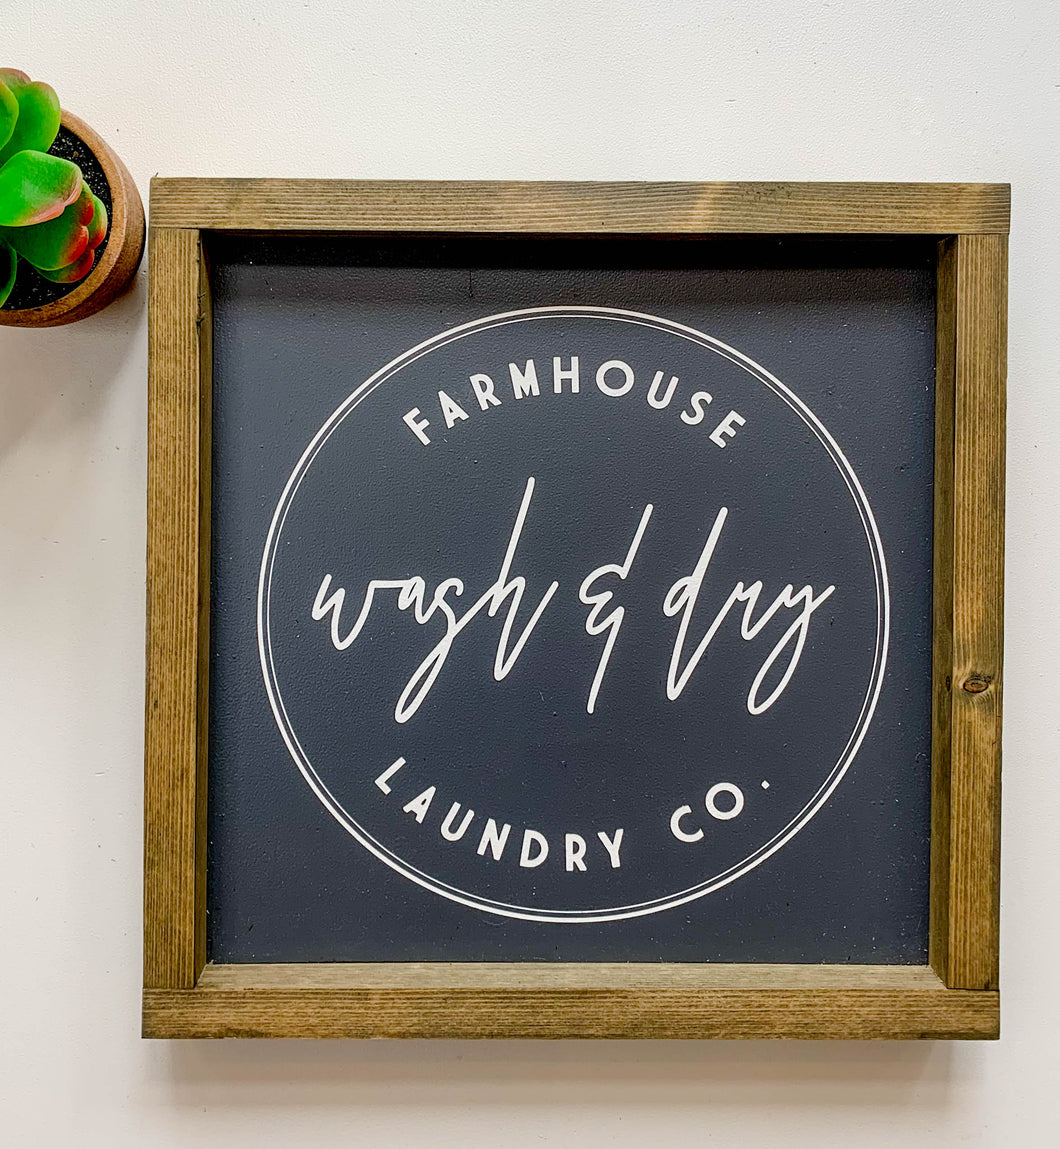 Handmade Sign - Farmhouse Wash & Dry Co.